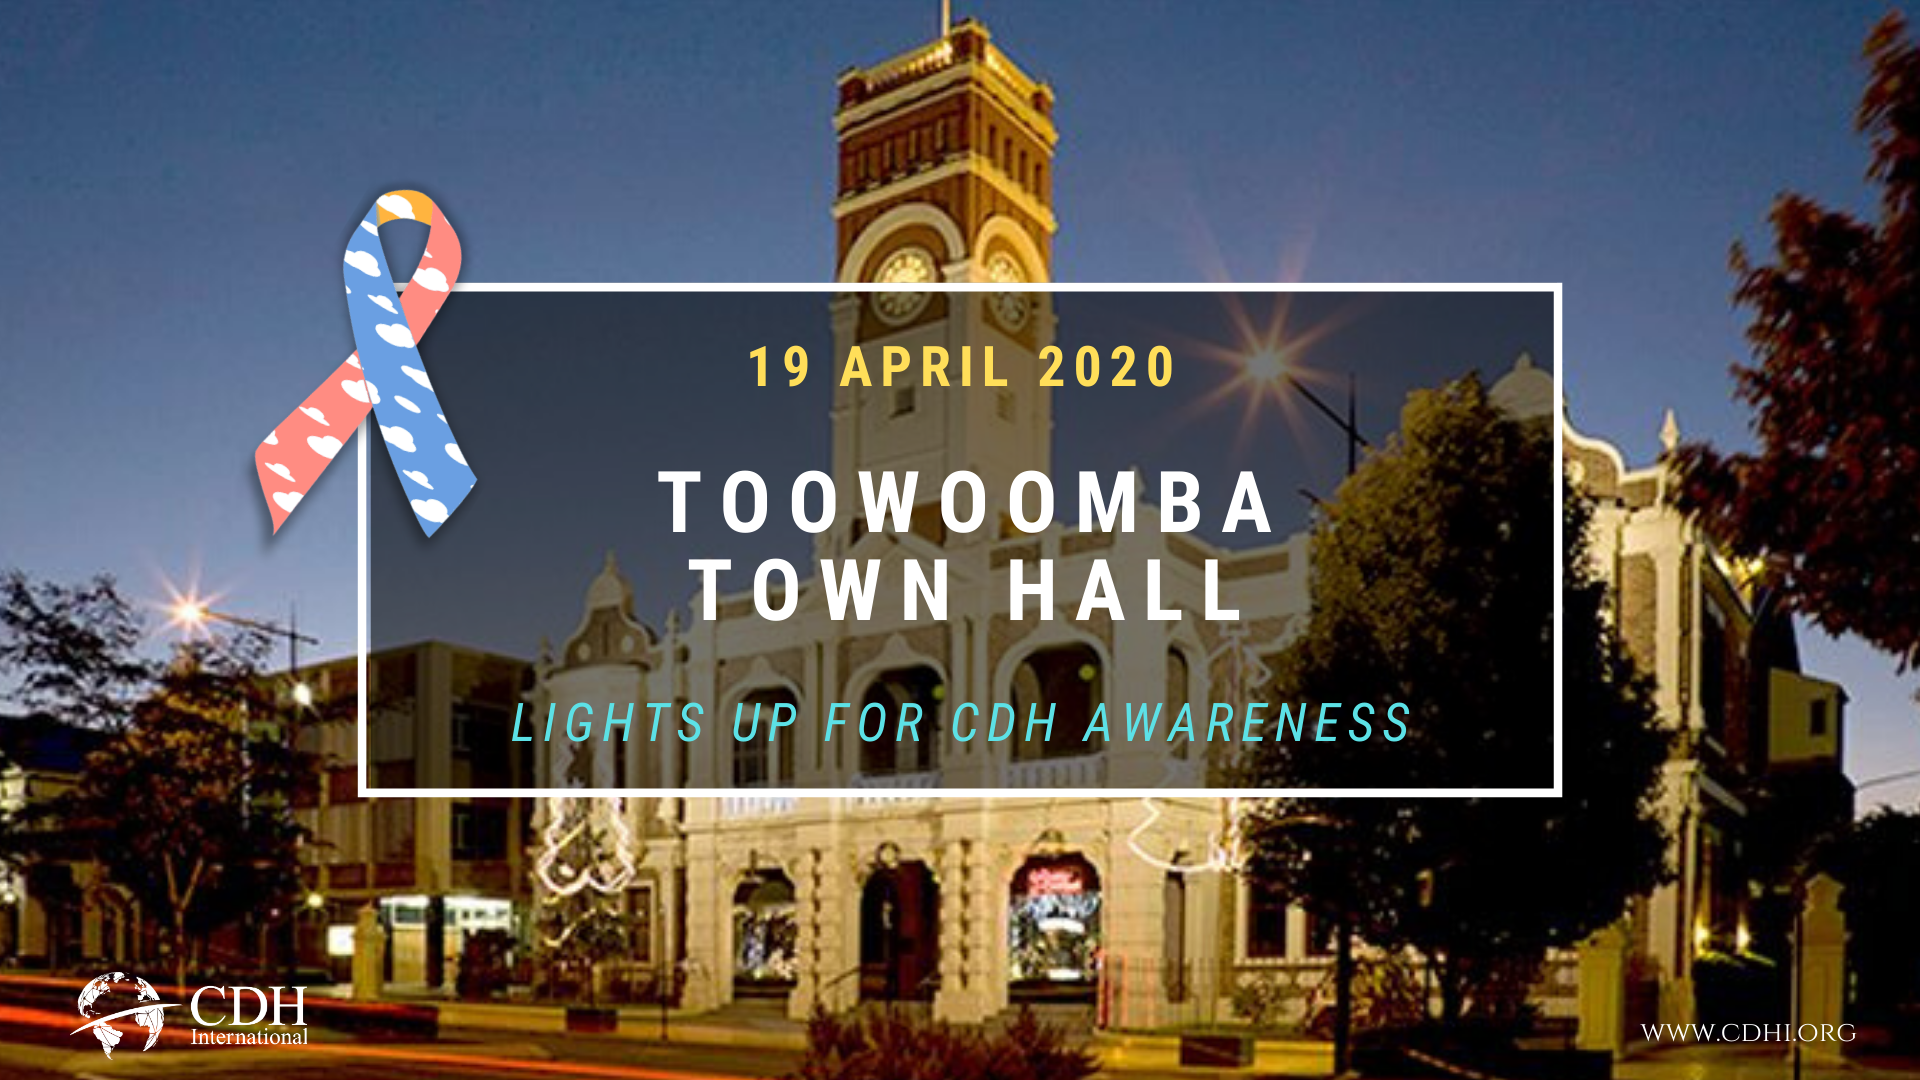 Melbourne Star Observation Wheel Lights Up For CDH Awareness